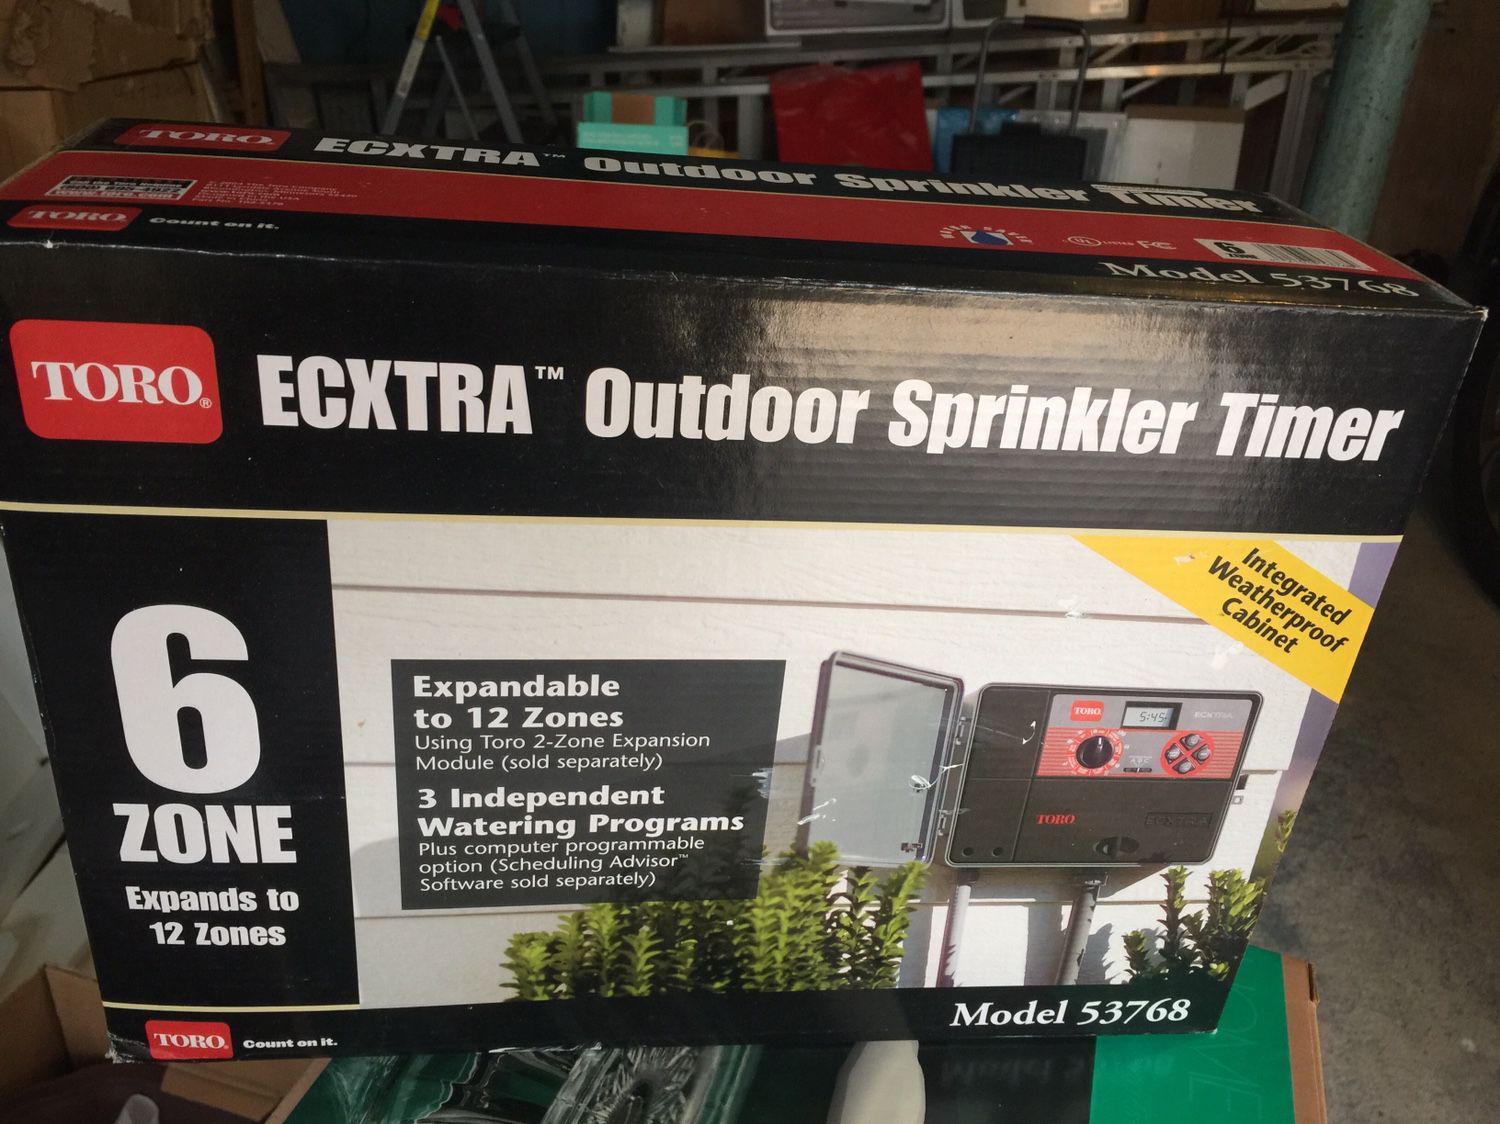 Outdoor Sprinkler Timer